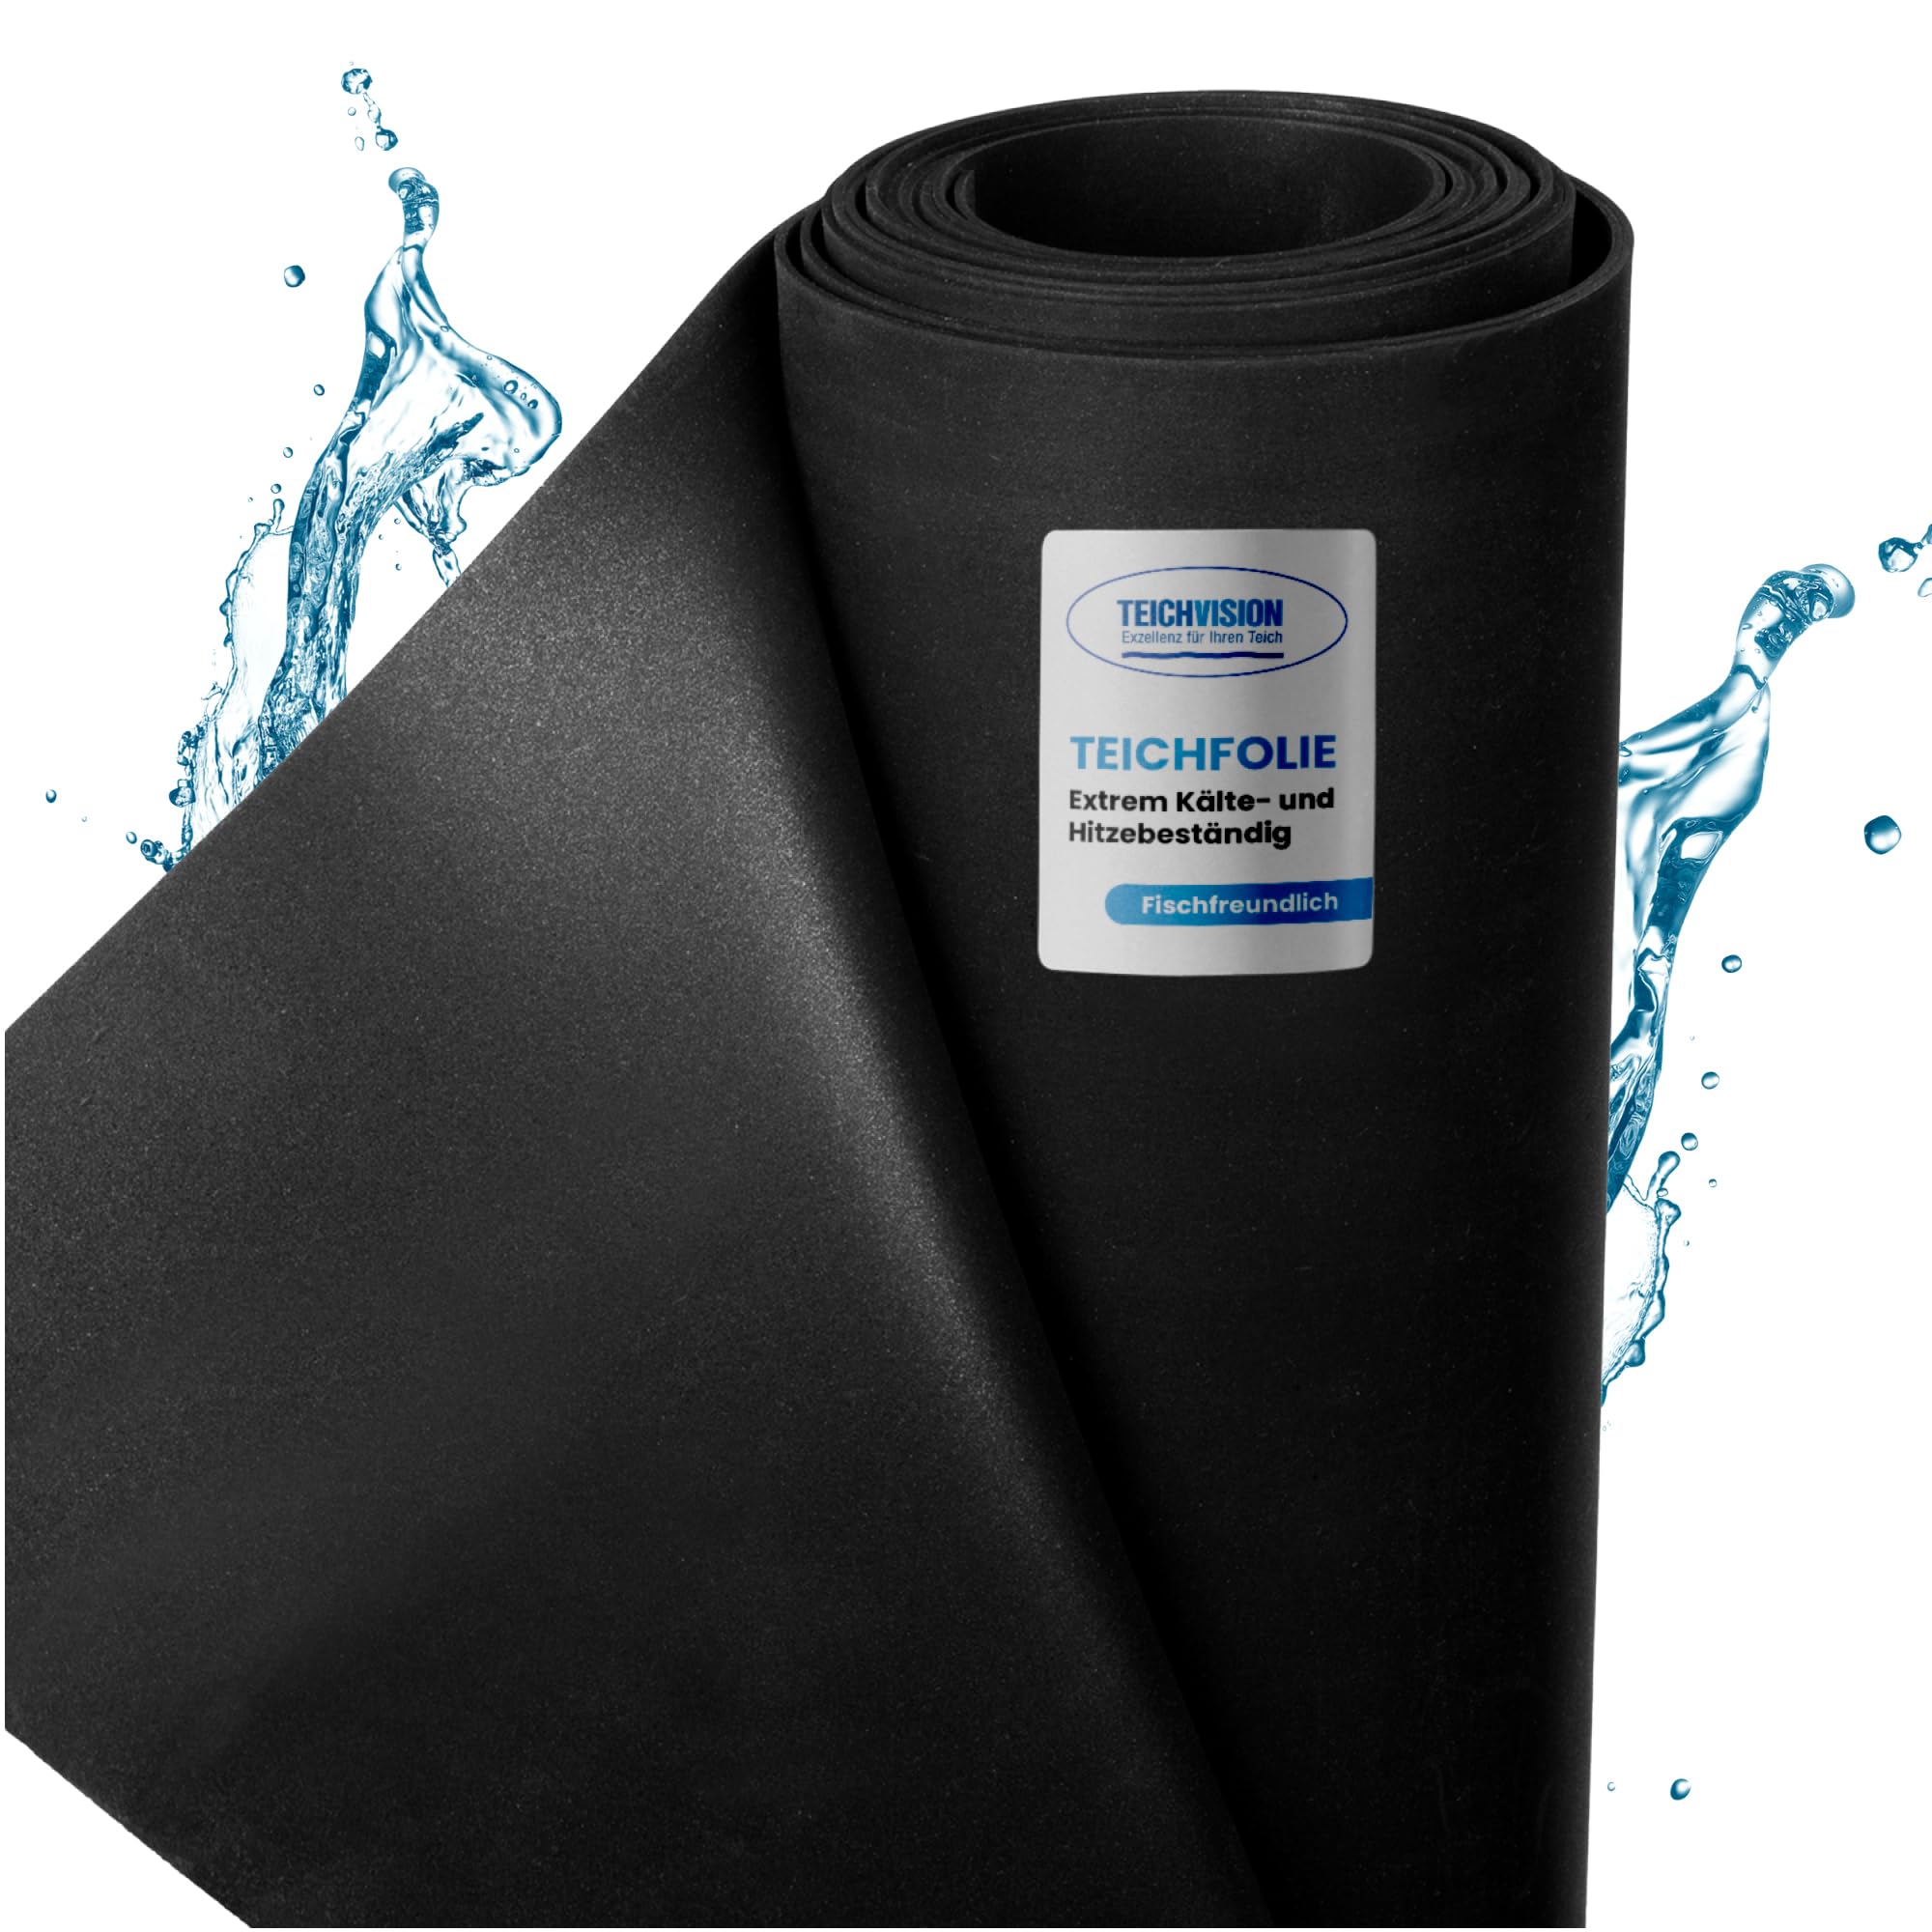 TeichVision - Premium EPDM Teichfolie Stärke 1 mm - 12,2 m x 7,5 m/naturgerechte EPDM Folie schwarz - besonders langlebig/auch geeignet als Hochbeet Folie wasserdicht